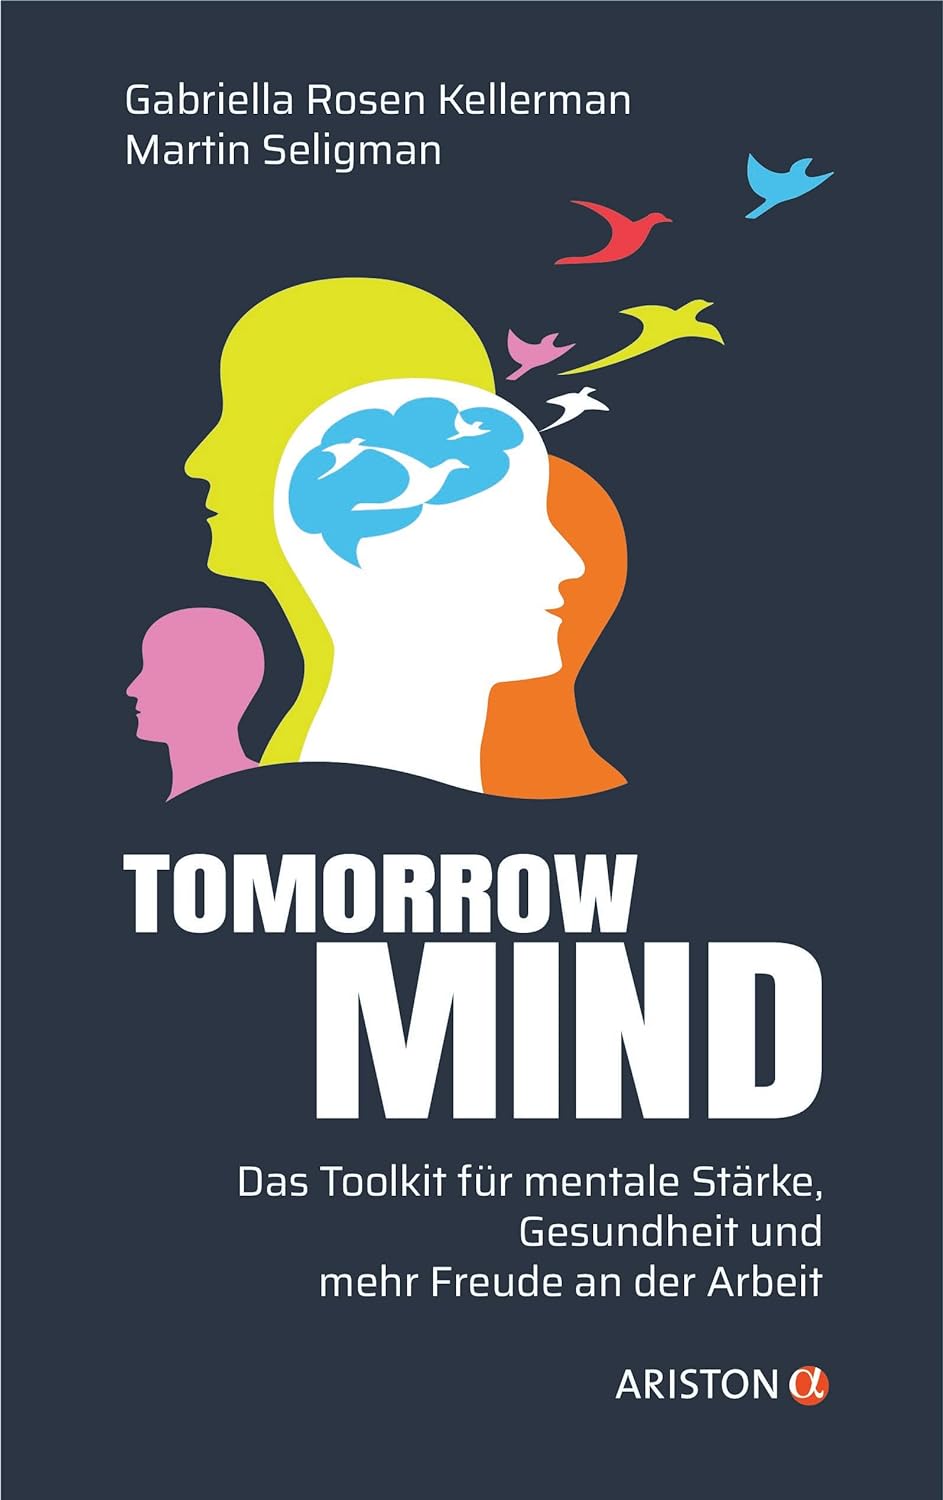 Titelbild Tomorrowmind: Das Toolkit für mentale Stärke, Gesundheit und mehr Freude an der Arbeit, von Gabriella Rosen Kellerman und Martin Seligman